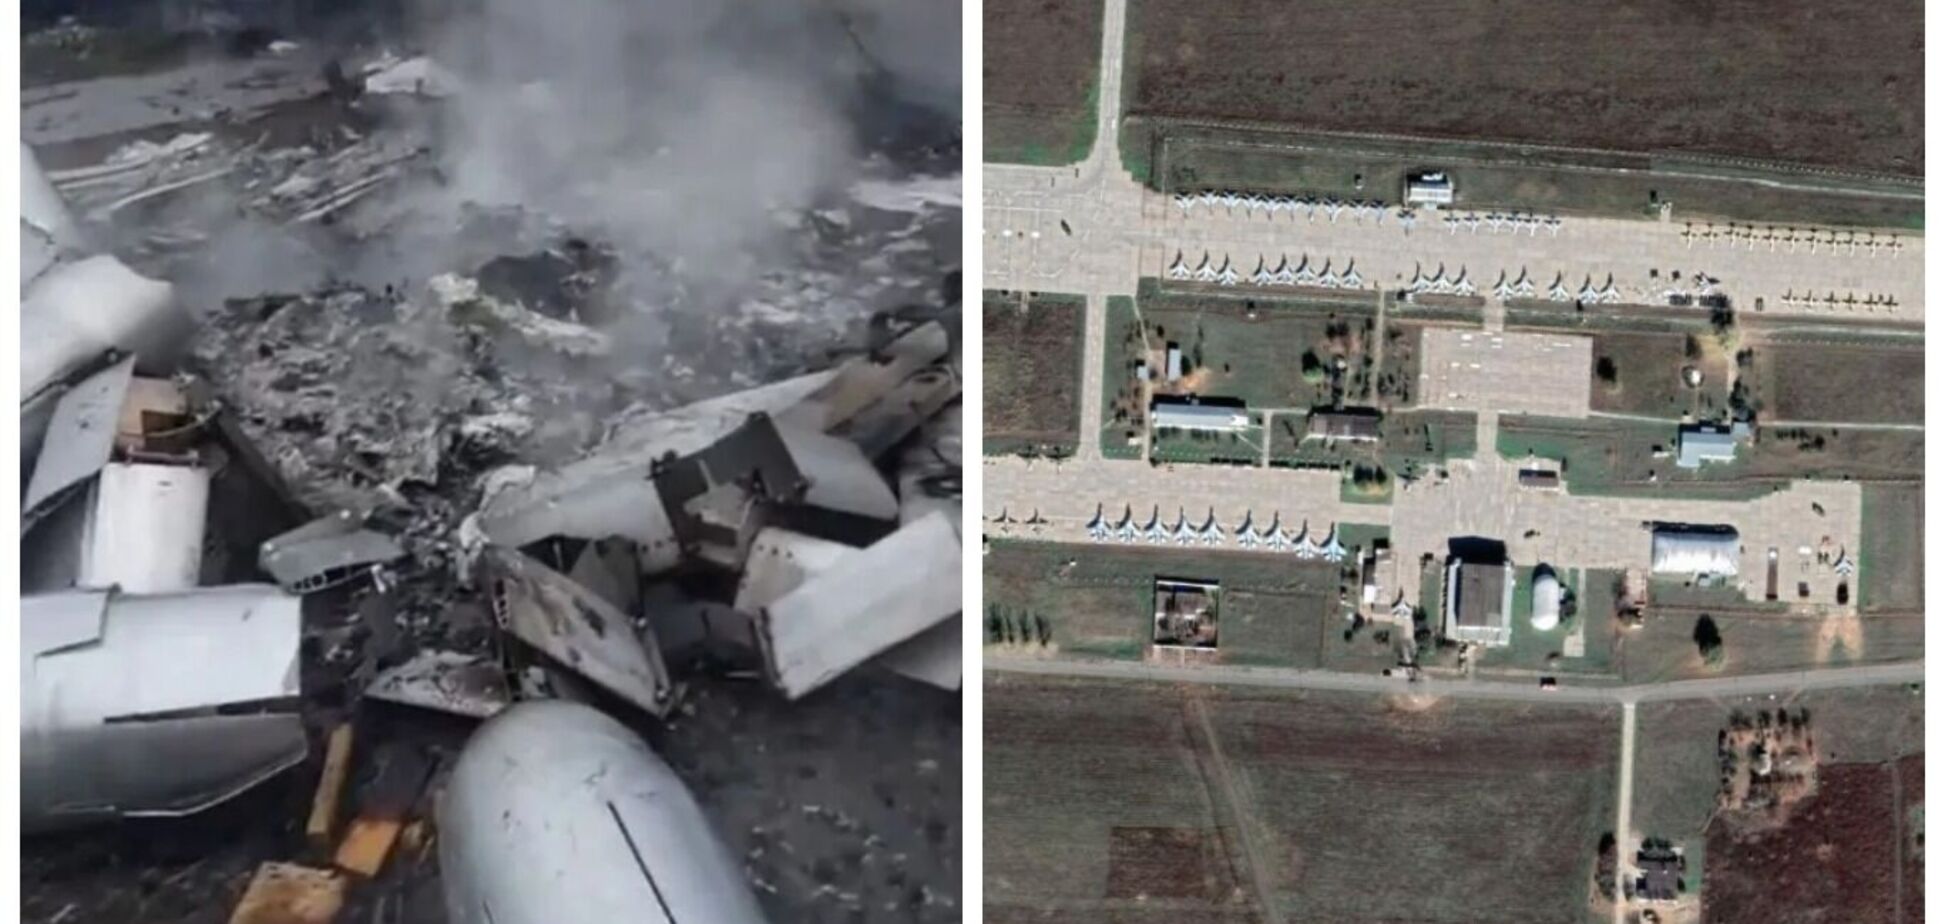 Обгорілі модулі для КАБів і понівечені літаки: у мережі показали можливі наслідки удару по військовому аеродрому в РФ